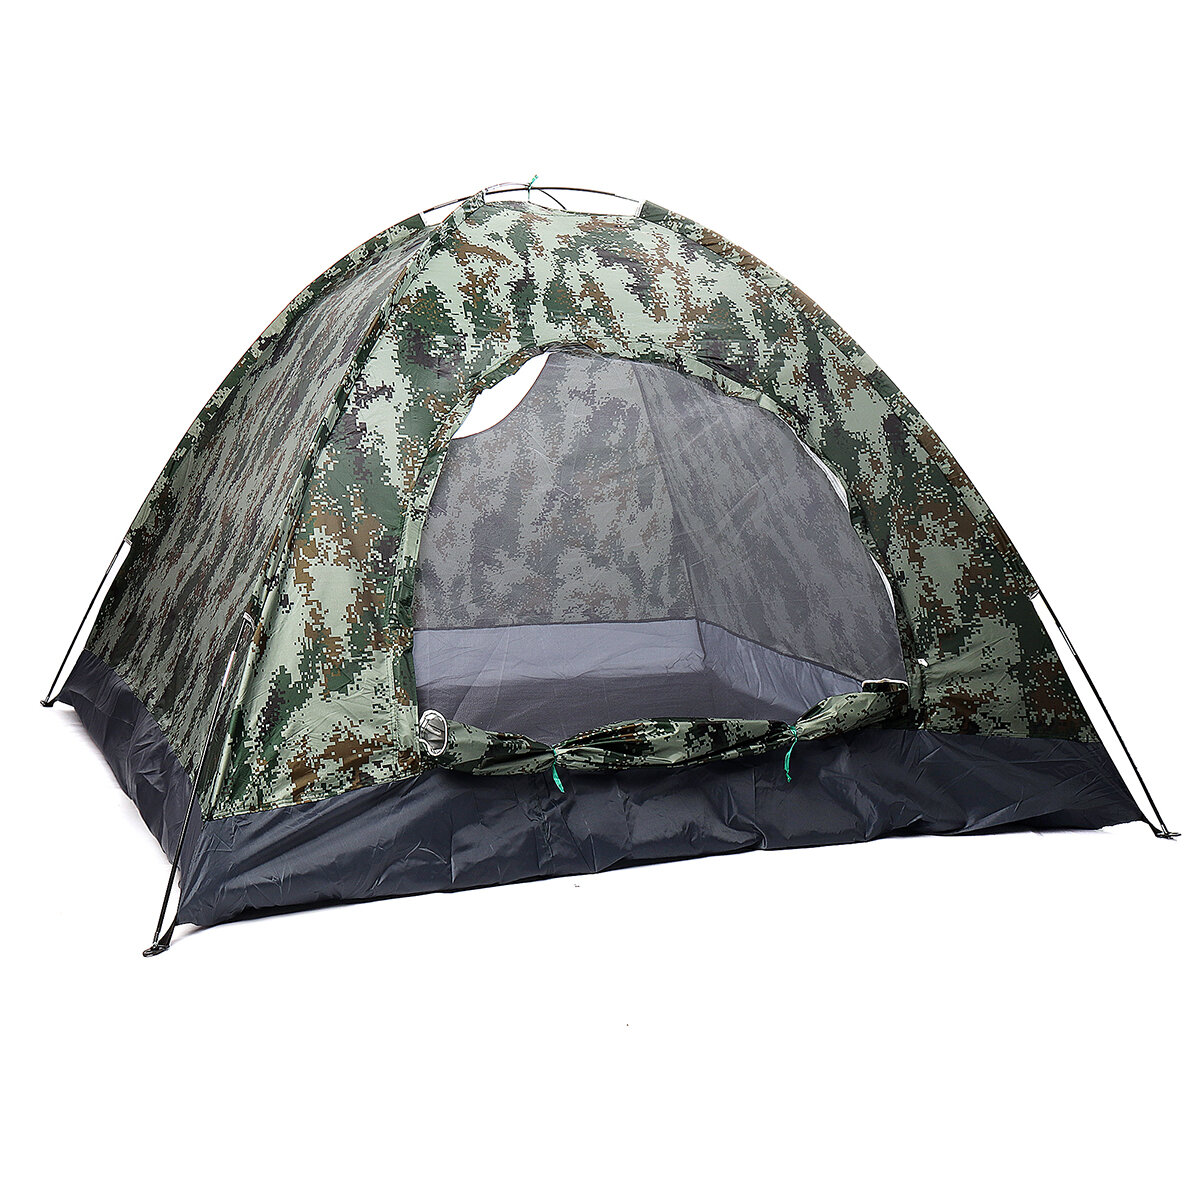 Tenda impermeável para 3-4 pessoas com porta redonda para camping e caminhadas, suprimentos para dormir ao ar livre.